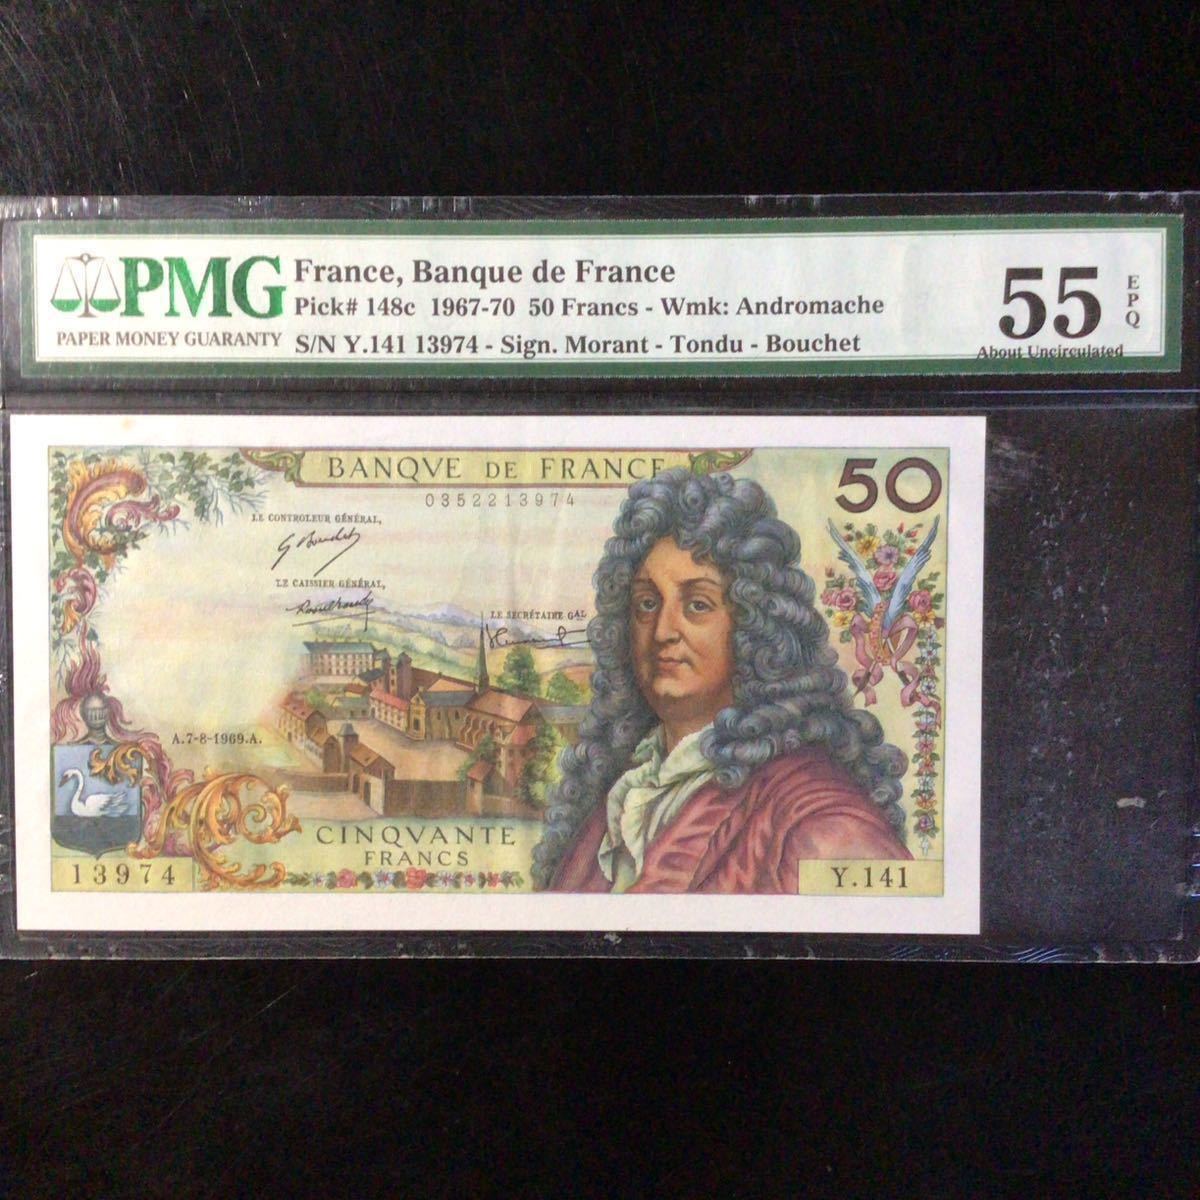 World Banknote Grading FRANCE《Banque de France》50 Francs【1969